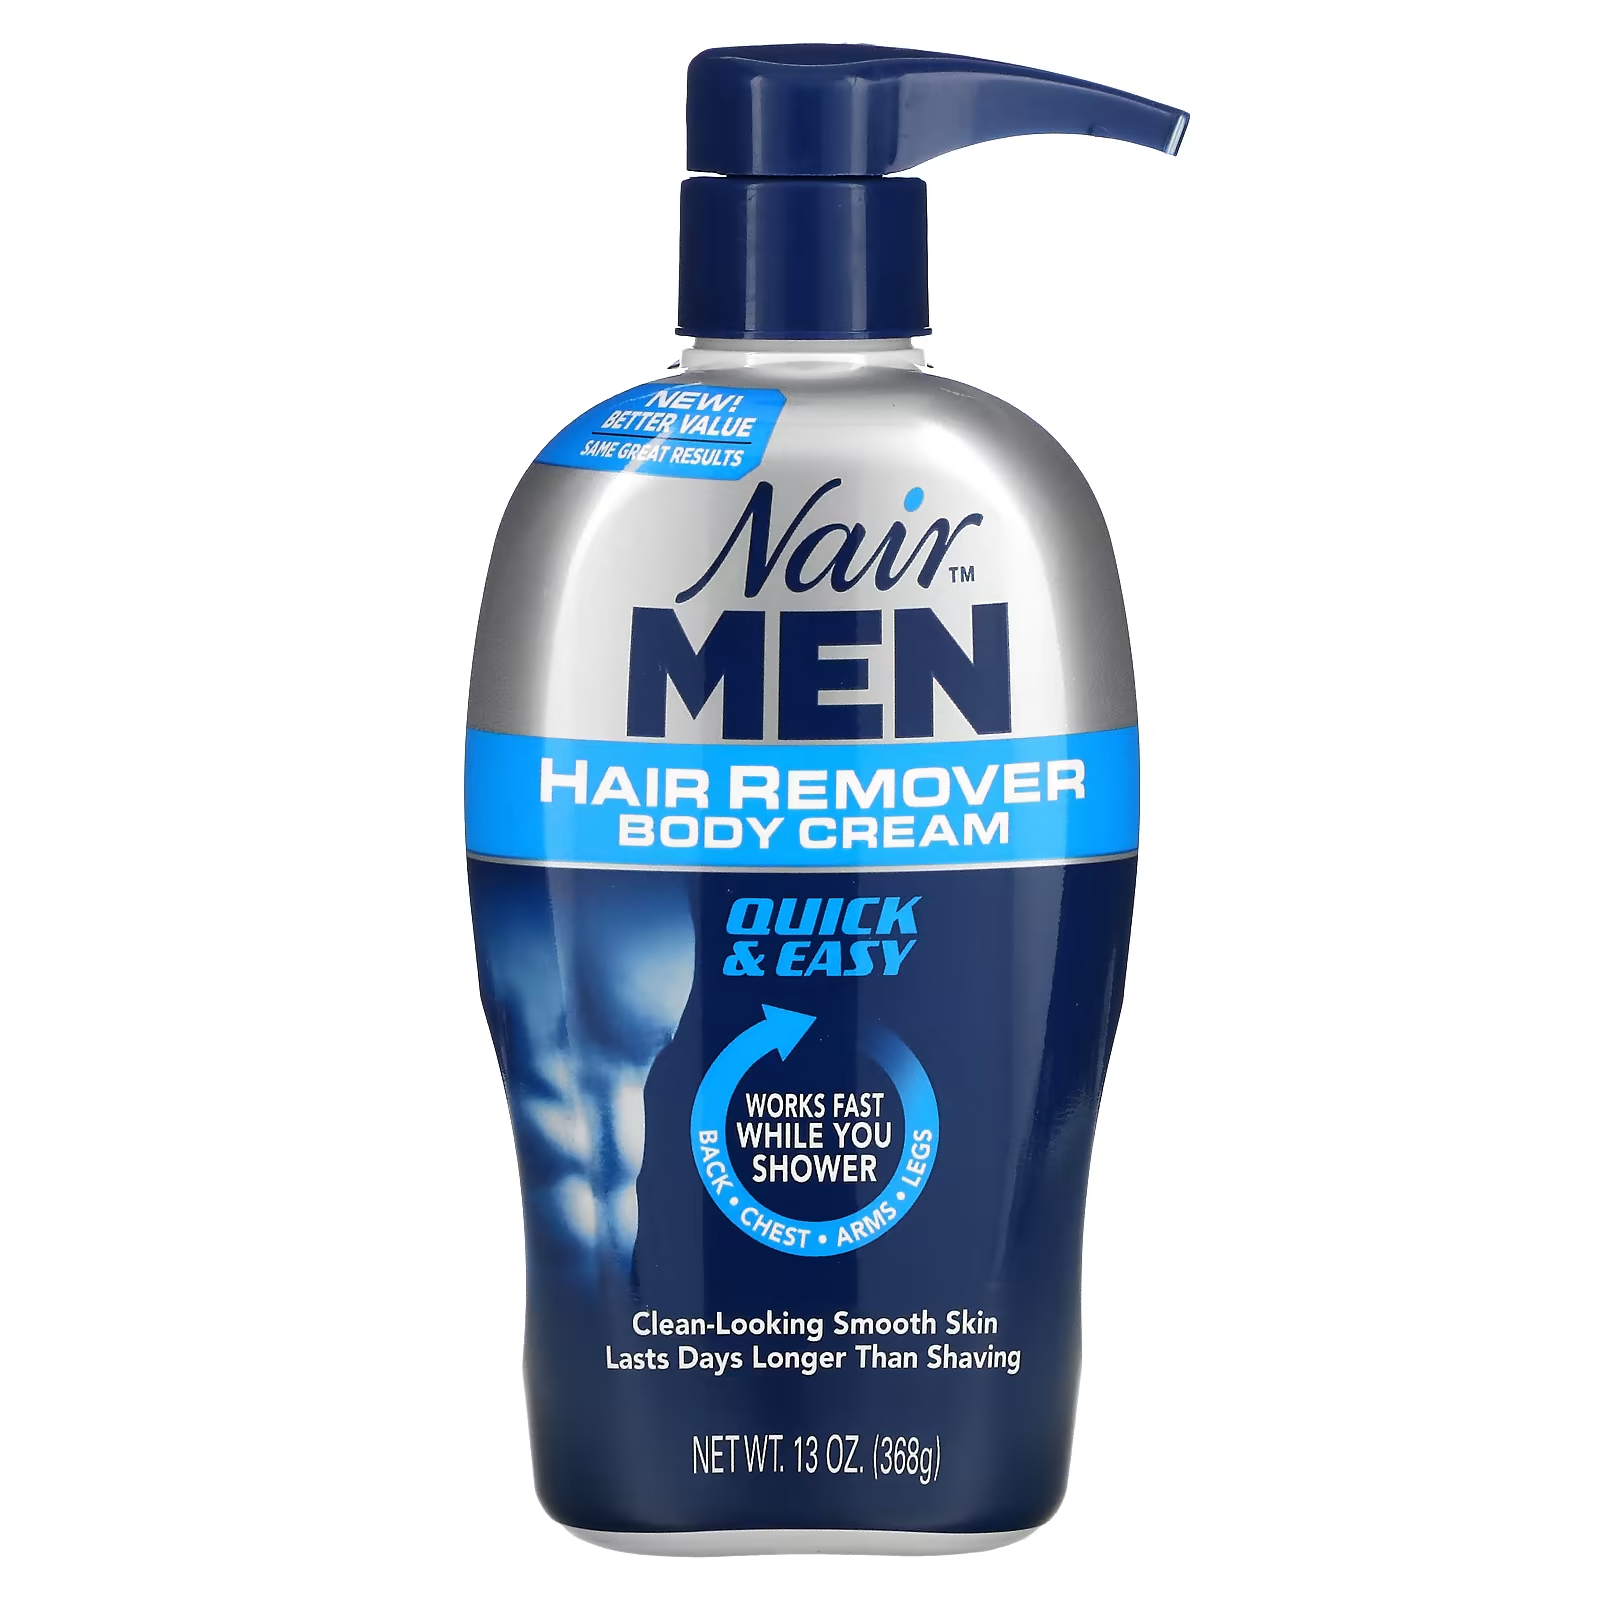 Крем Nair For Men для удаления волос, 368 г nair средство для удаления волос glide on формула для чувствительной кожи 93 г 3 3 унции